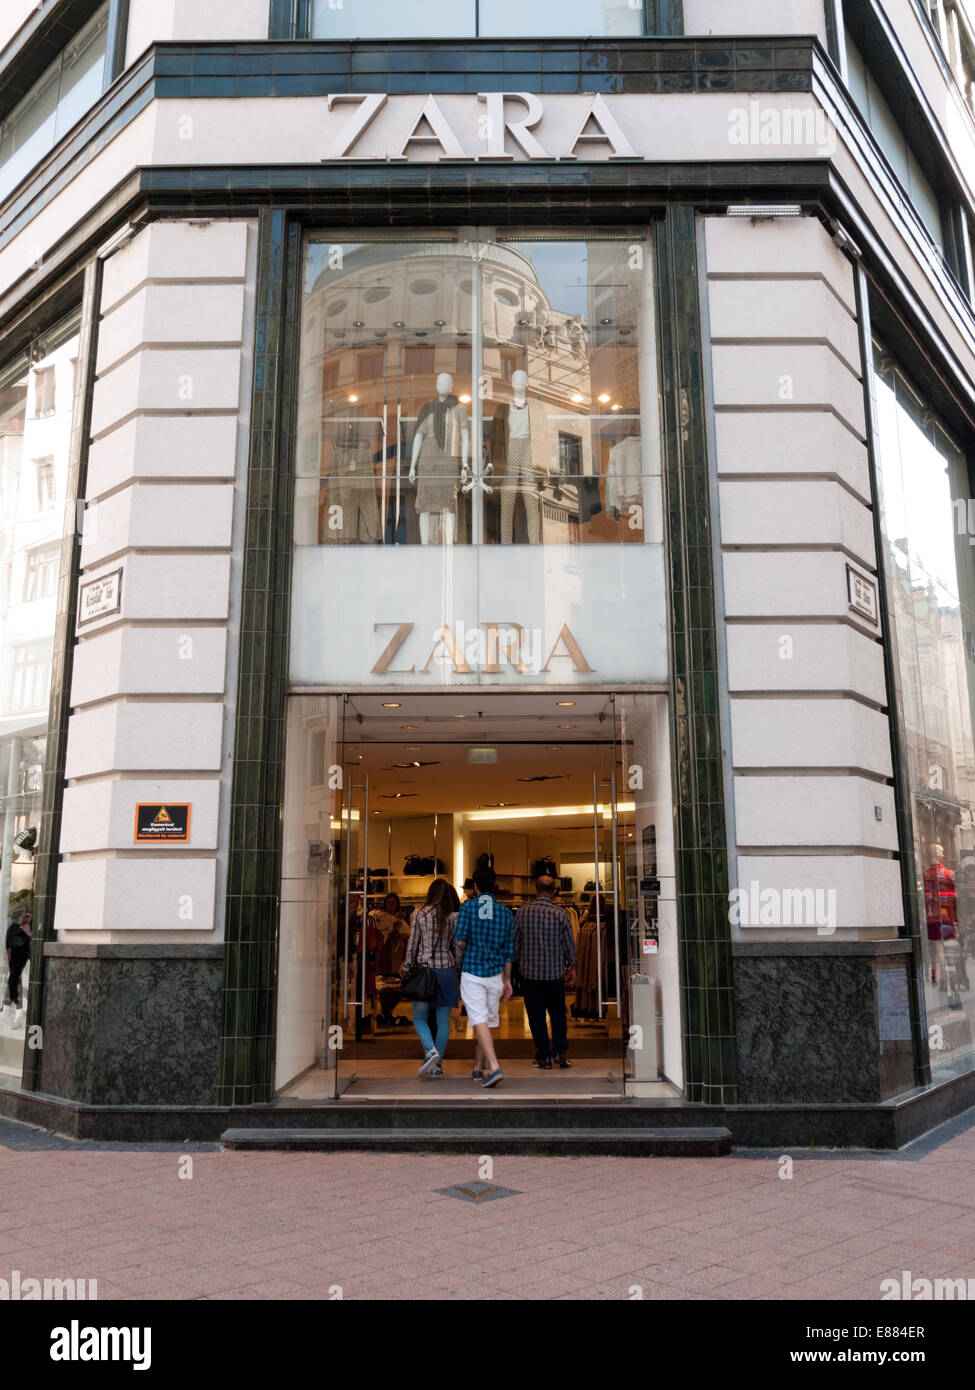 Eingang der Zara-Fashion-Store in der Innenstadt, Budapest, Ungarn  Stockfotografie - Alamy